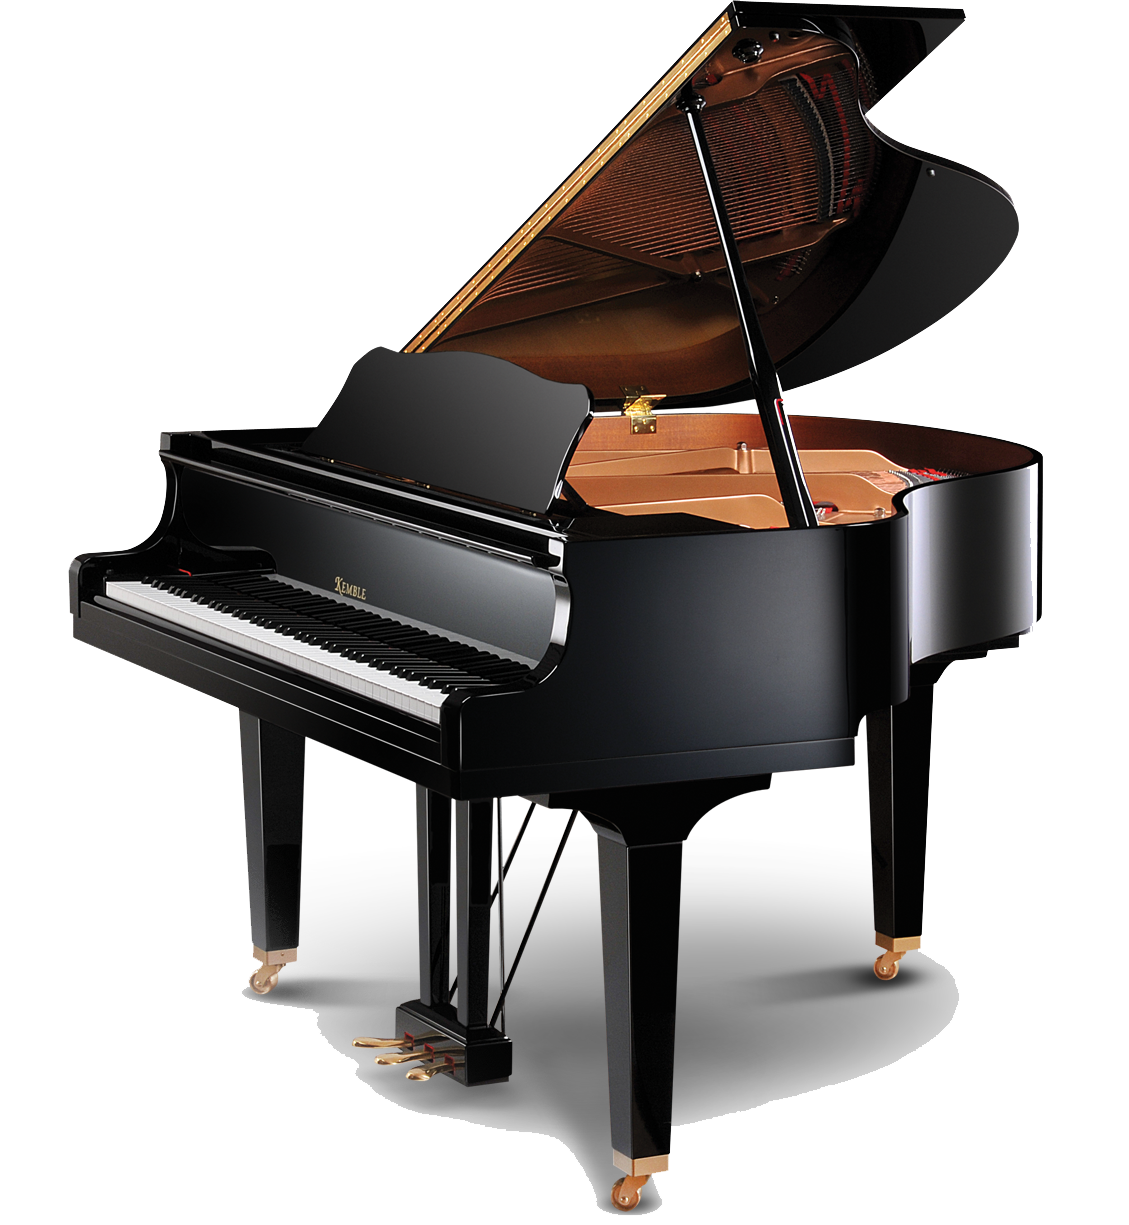 Grand piano upright piano Yamaha Corporation C. Bechstein.